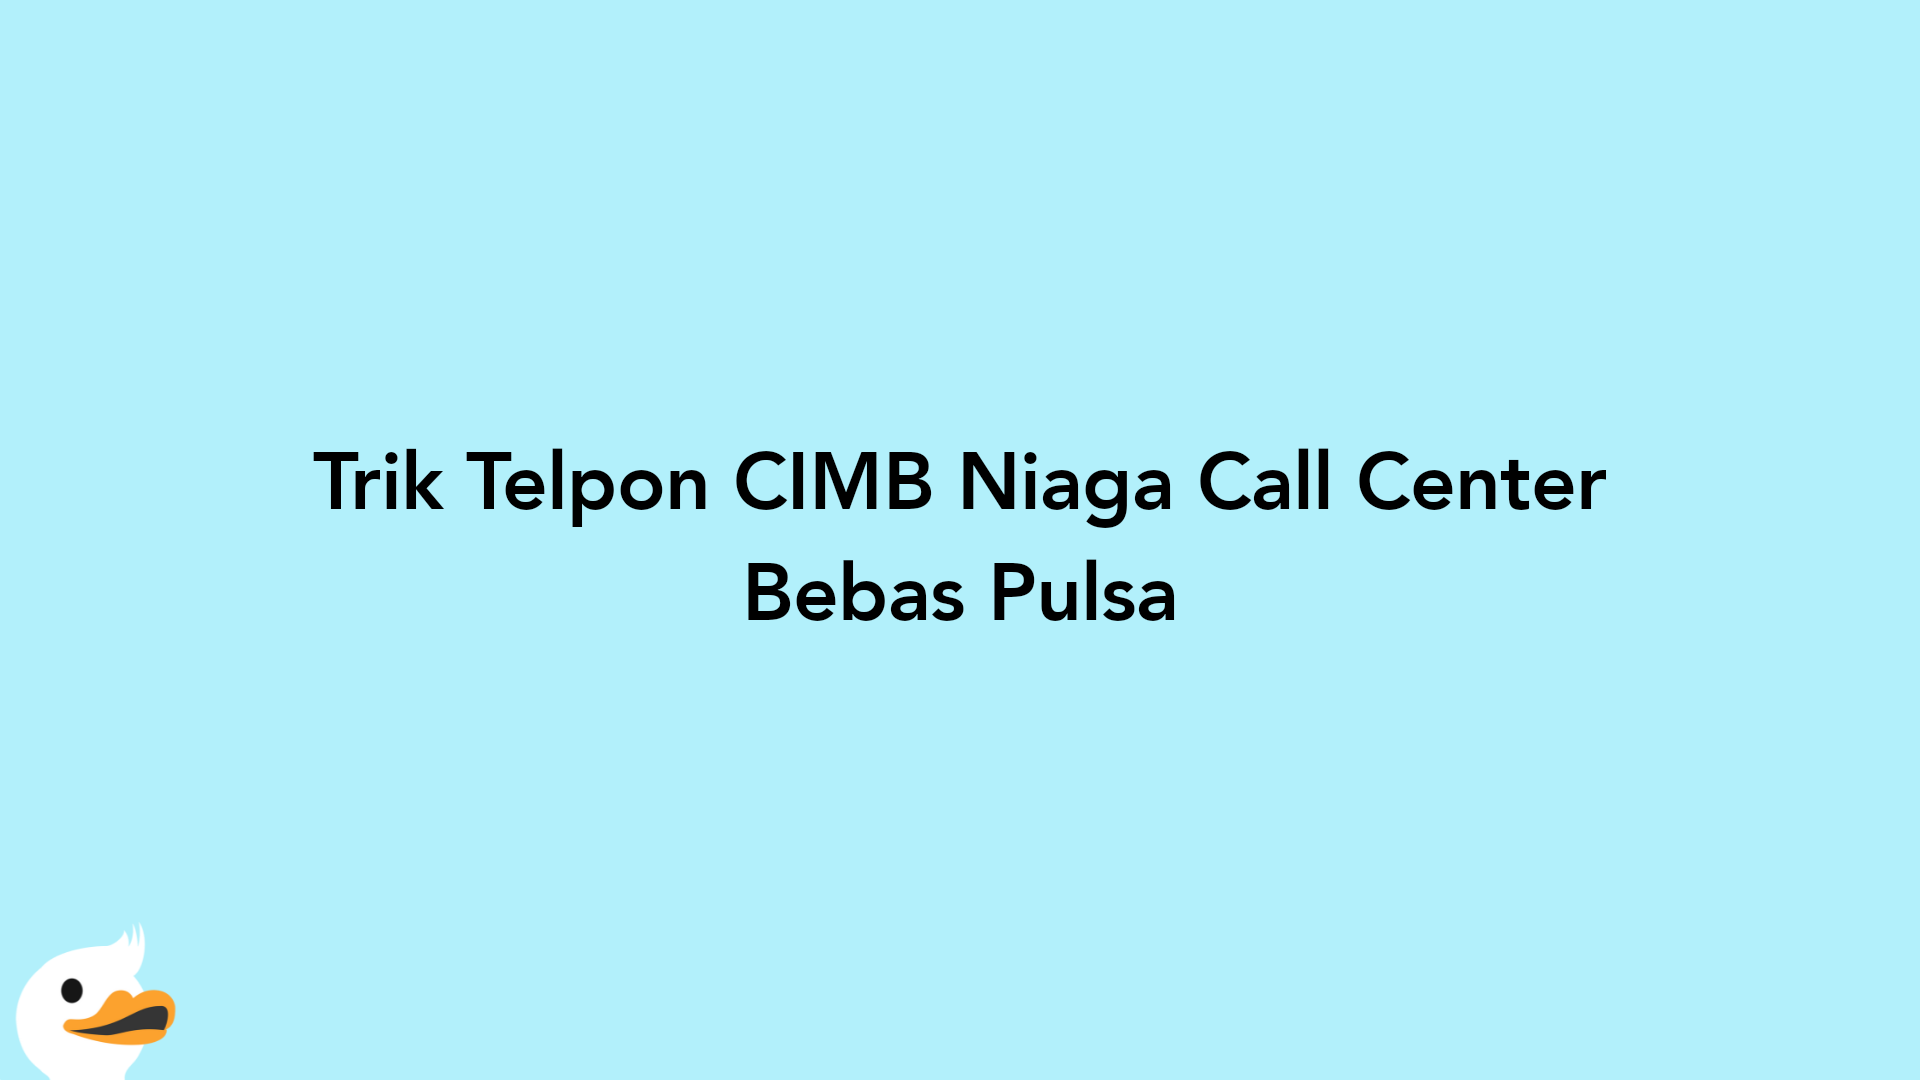 Trik Telpon CIMB Niaga Call Center Bebas Pulsa